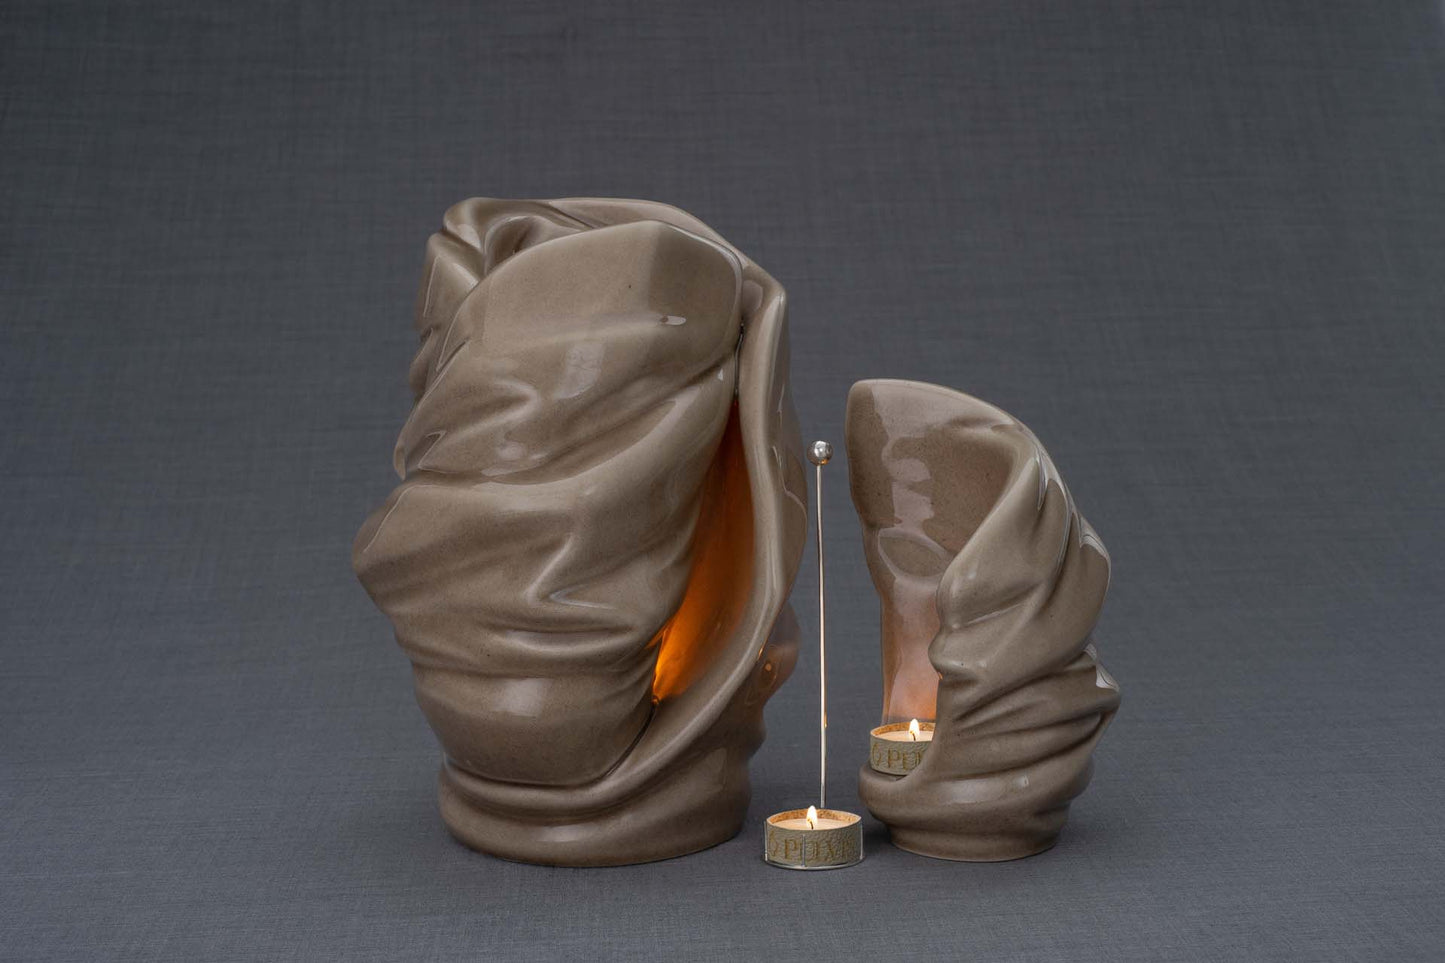 Pulvis Art Urns Adult Size Urn + Keepsake Urn Set Of Ceramic Art Urns for Ashes "Light" - (Large urn + Keepsake)